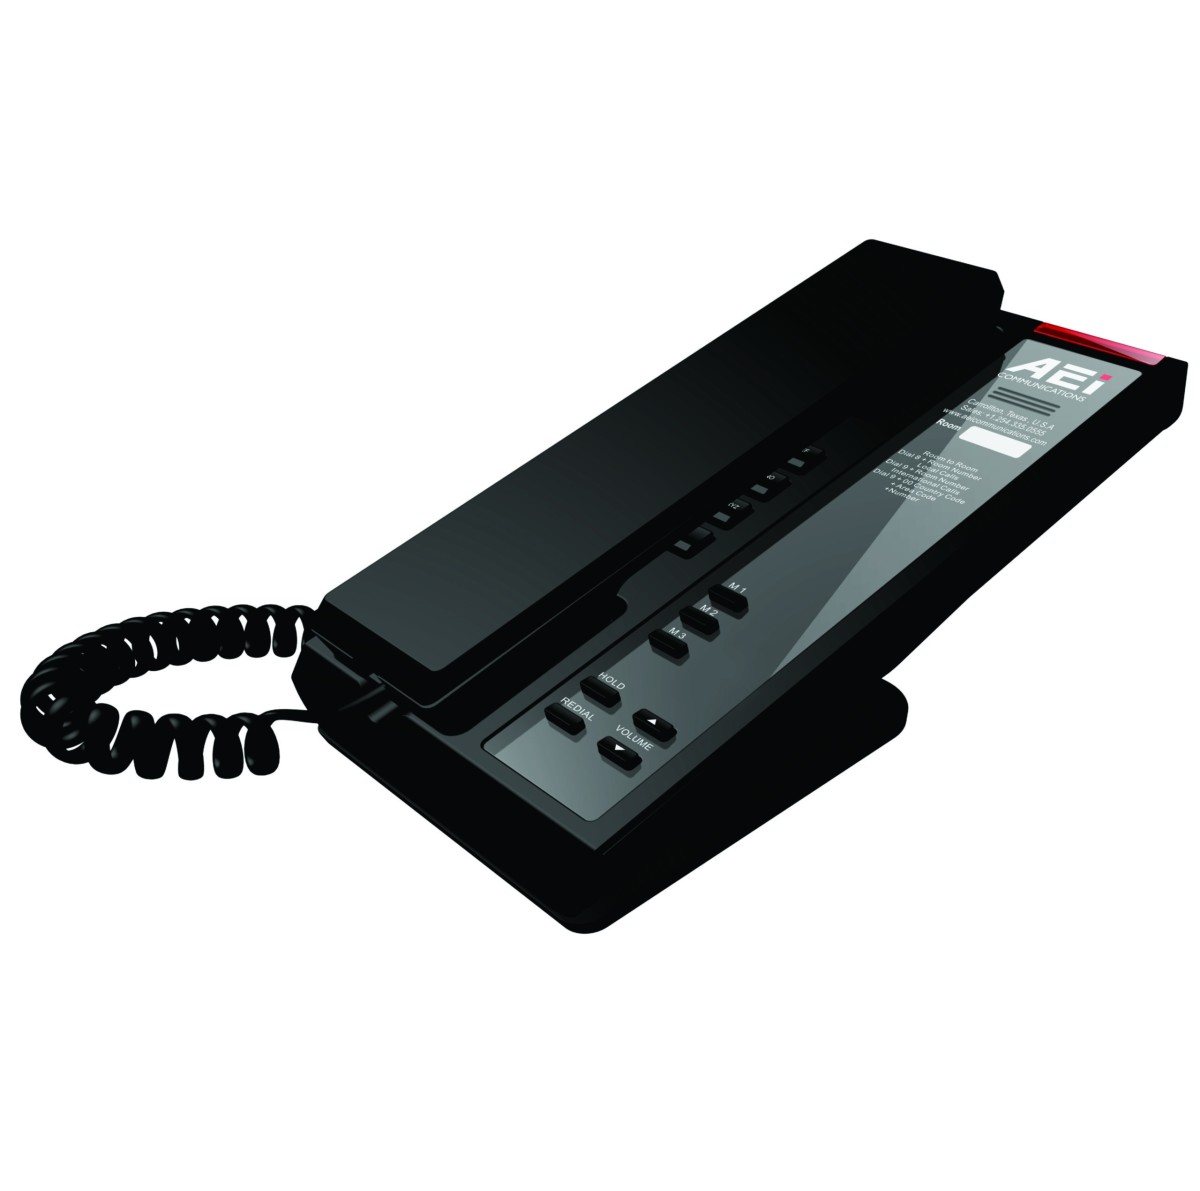 AEI SLN-1103 Slim Single-Line IP Corded Telephone